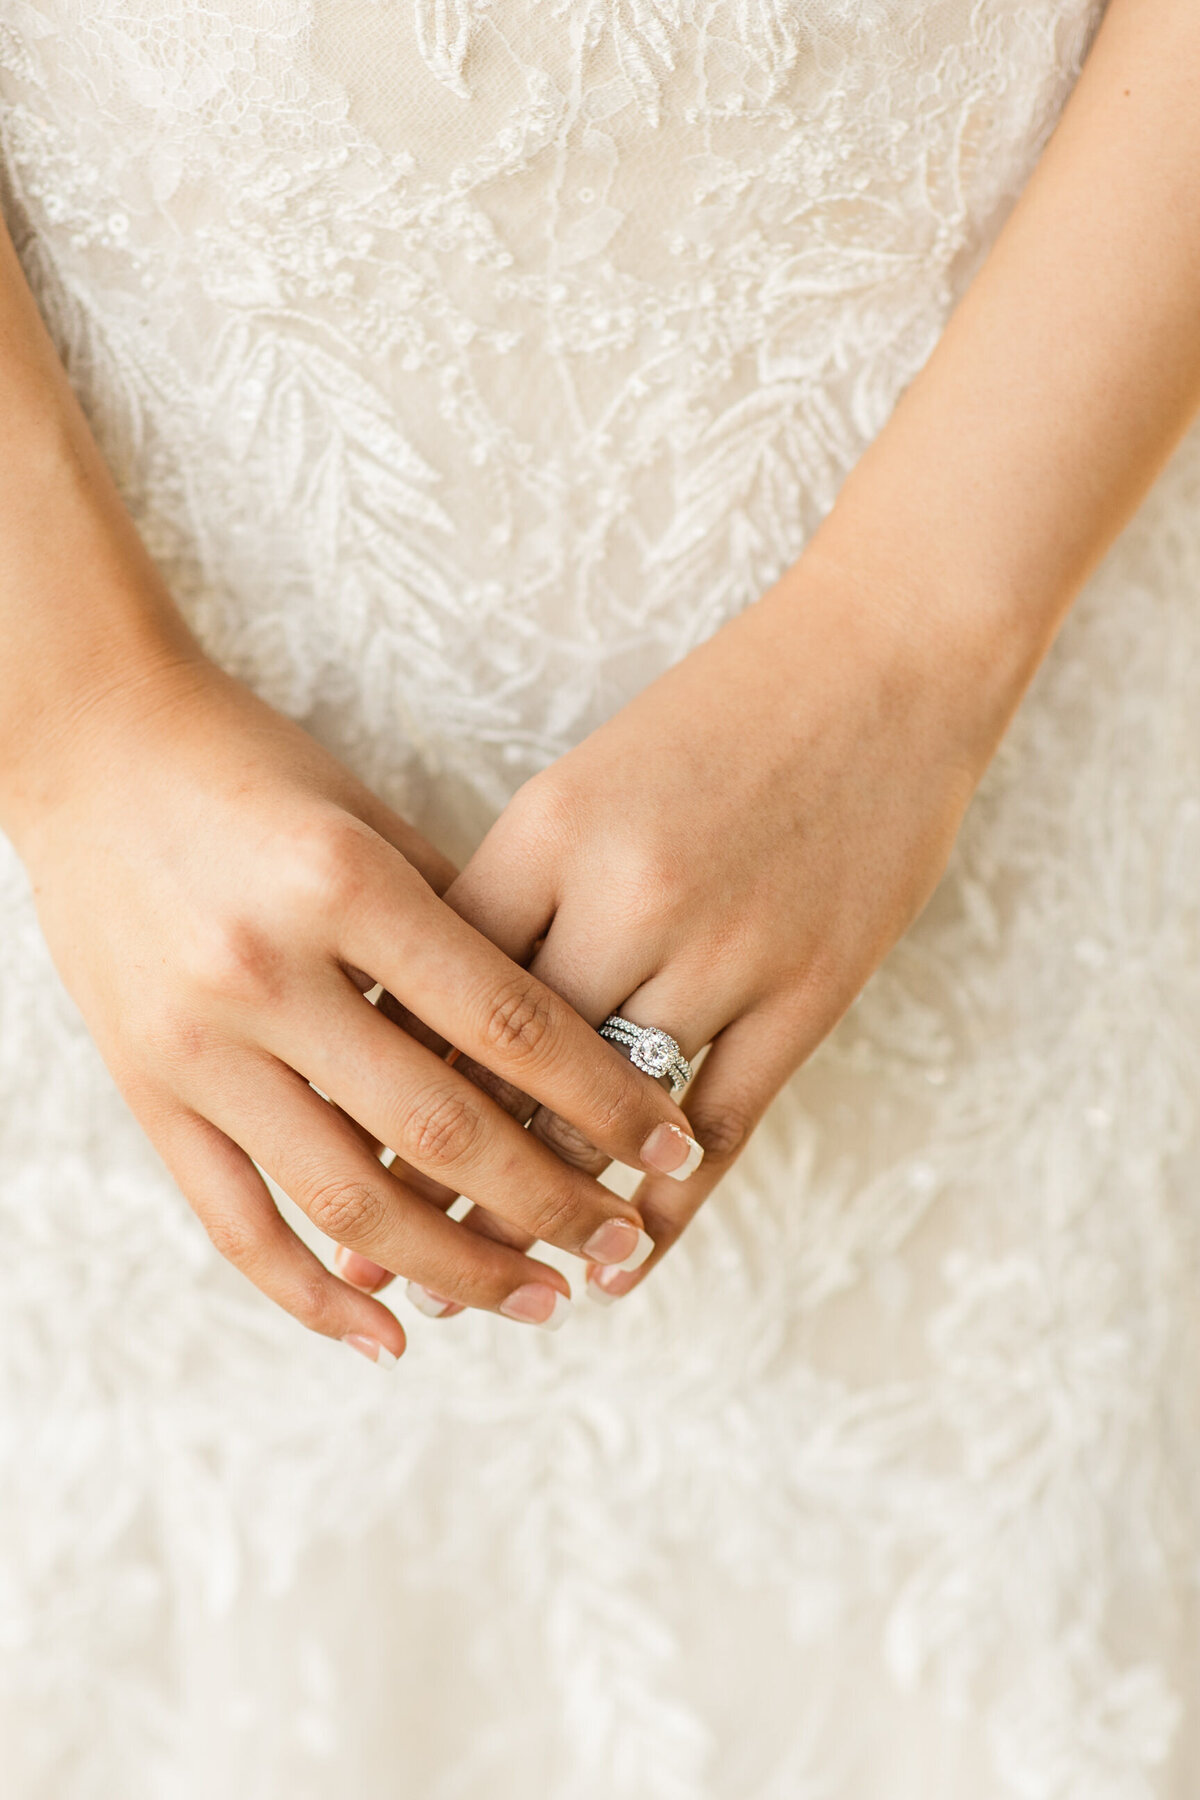 WEDDING-RING-BRIDE-1